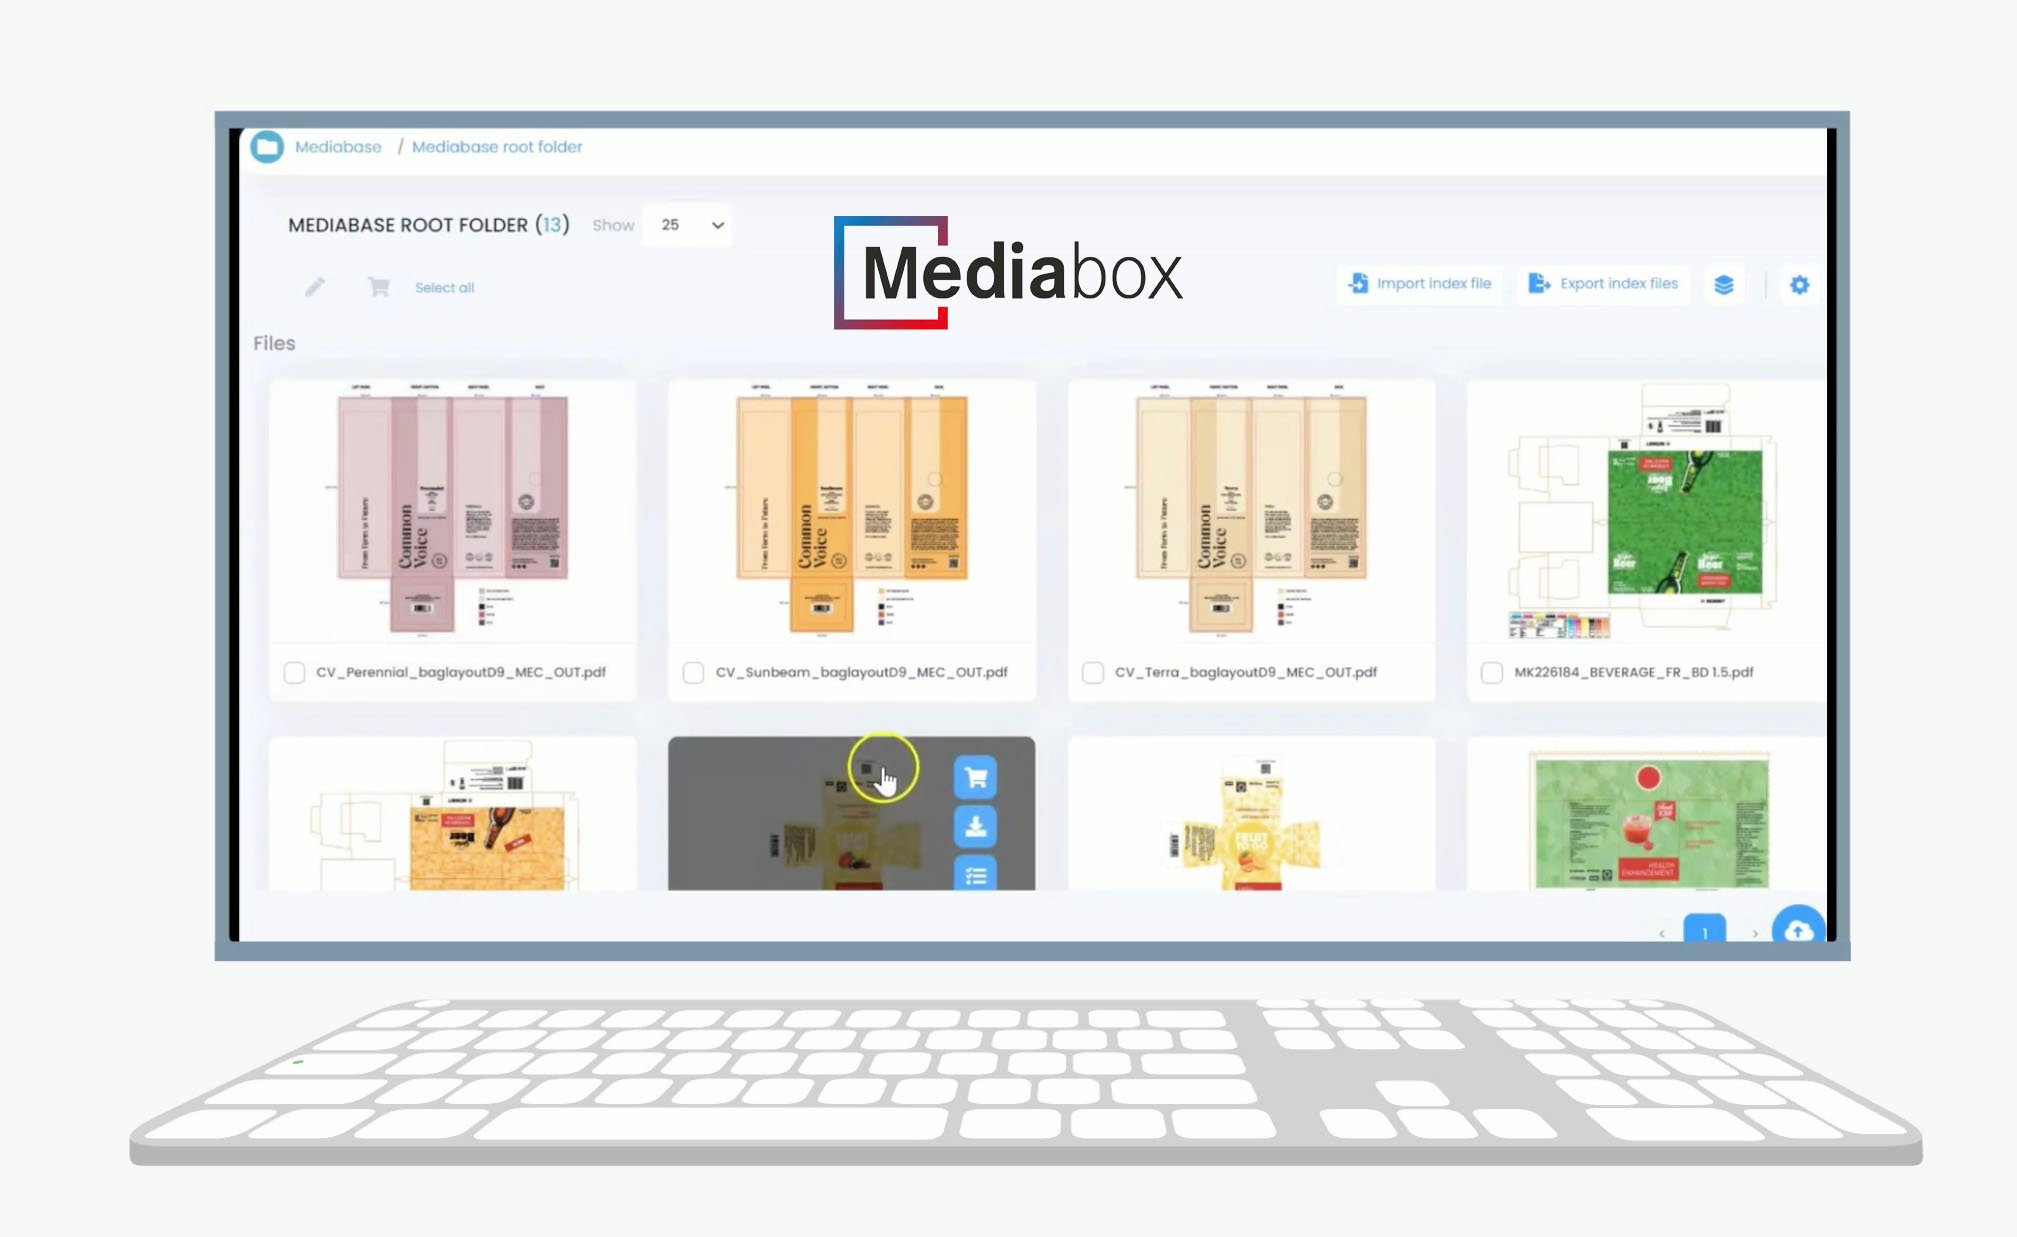 mediabox